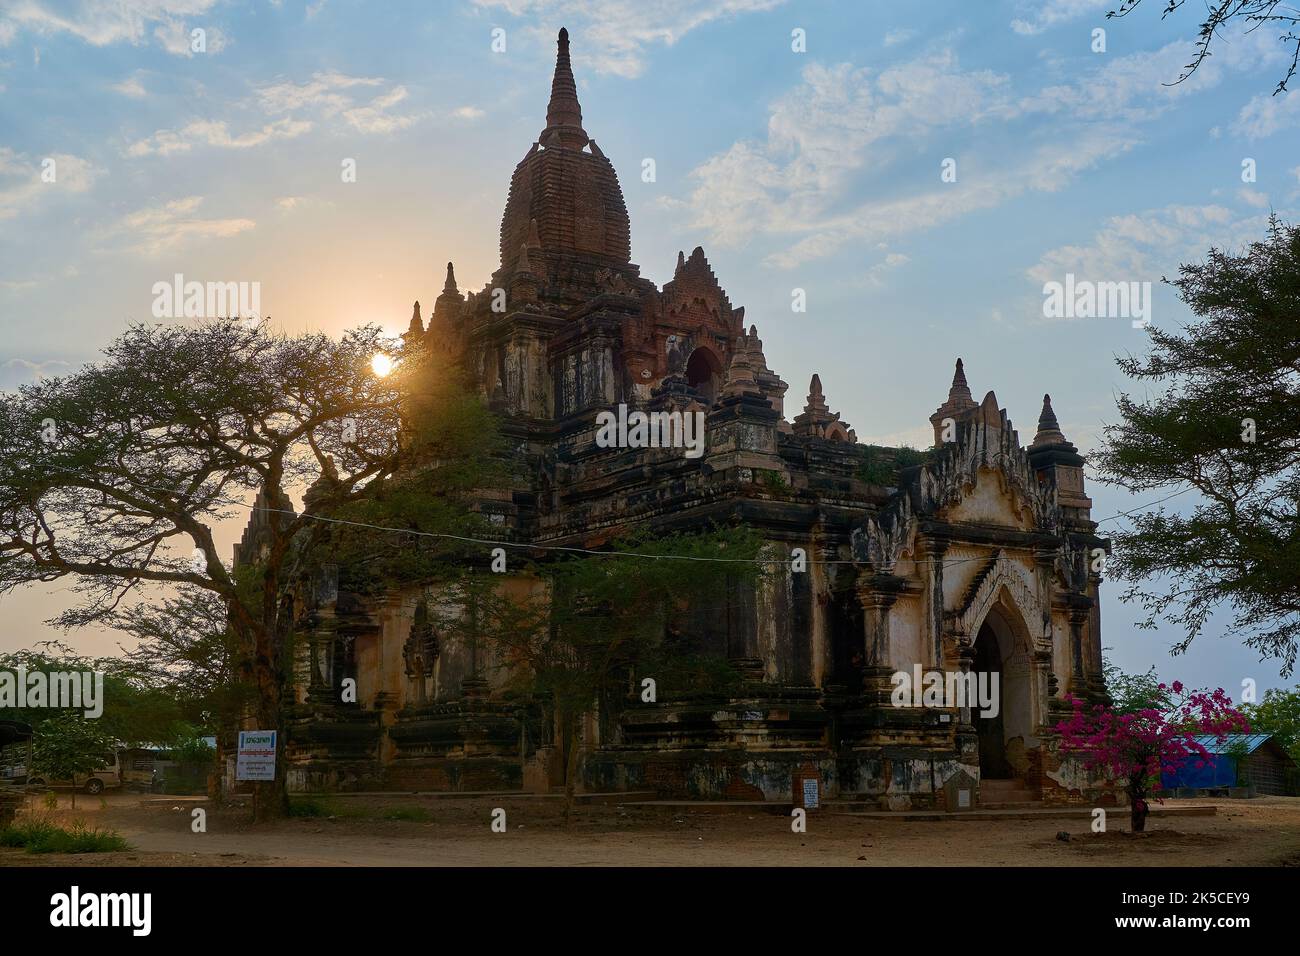 Shwegu Gyi Phaya at sunset, Bagan, Myanmar Stock Photo